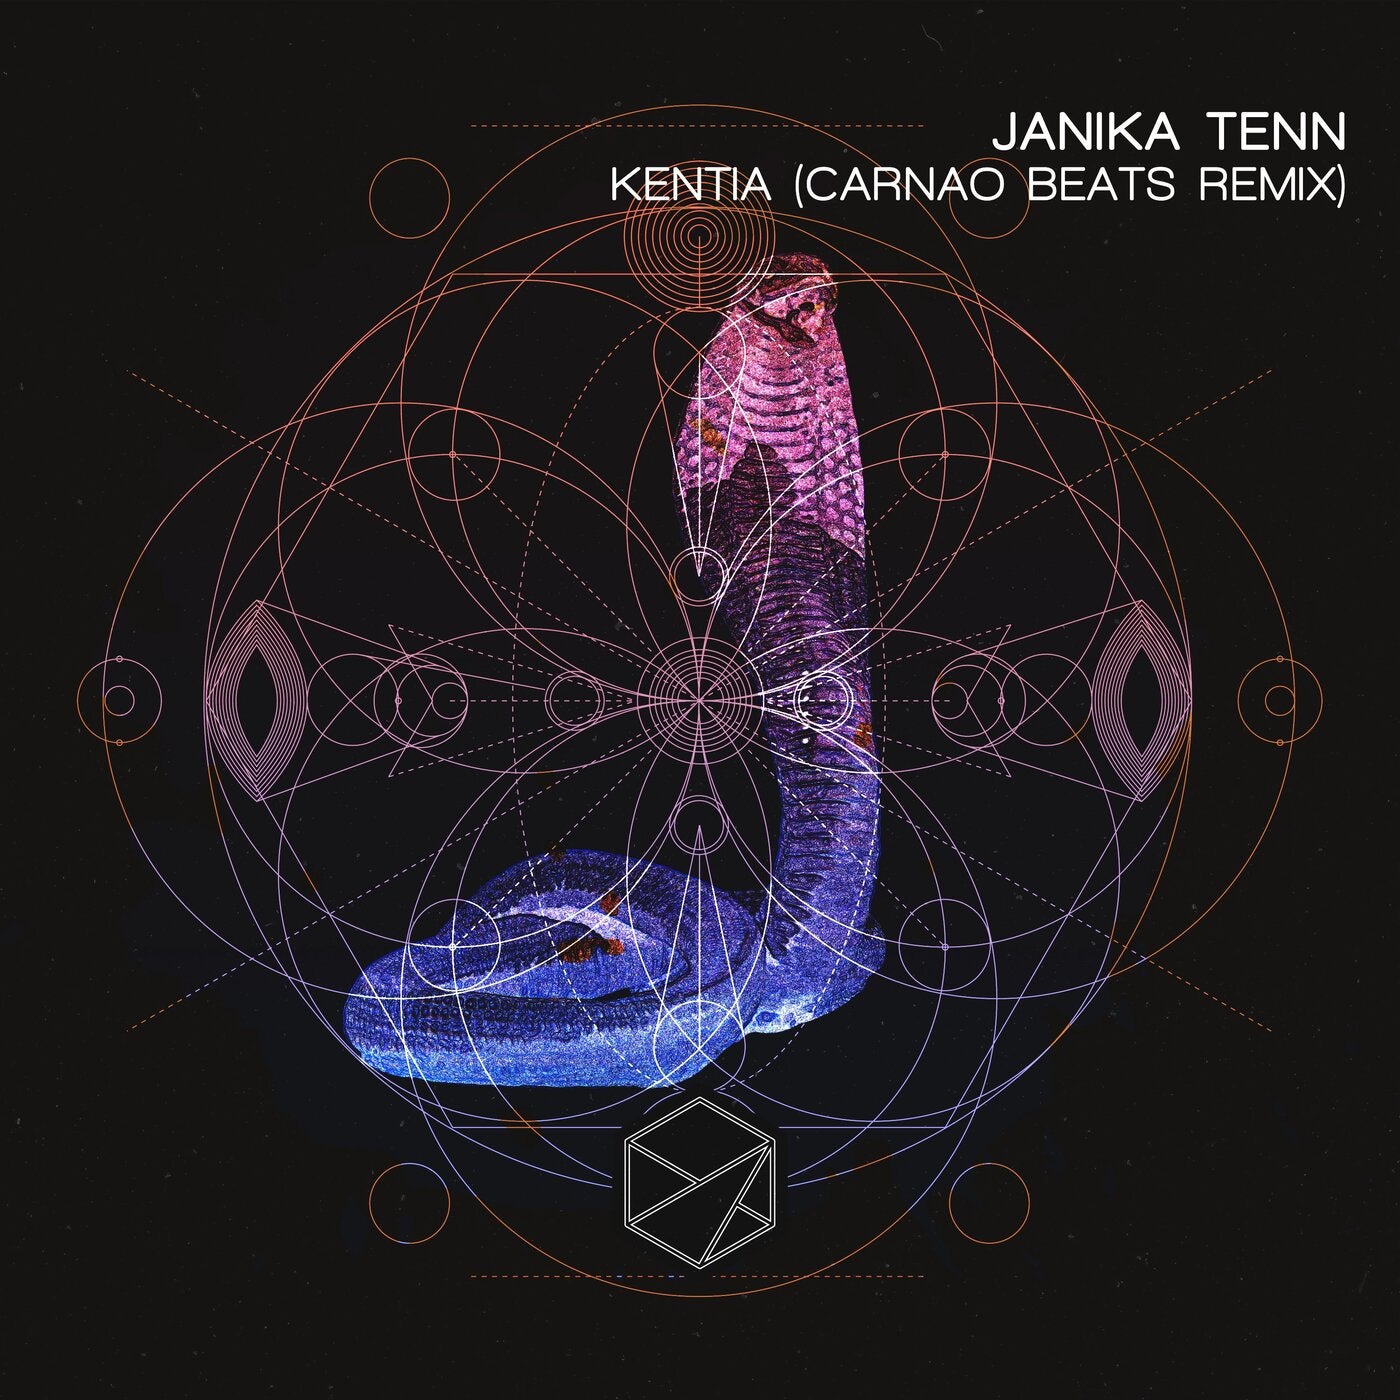 Kentia (Carneo Beats Remix)